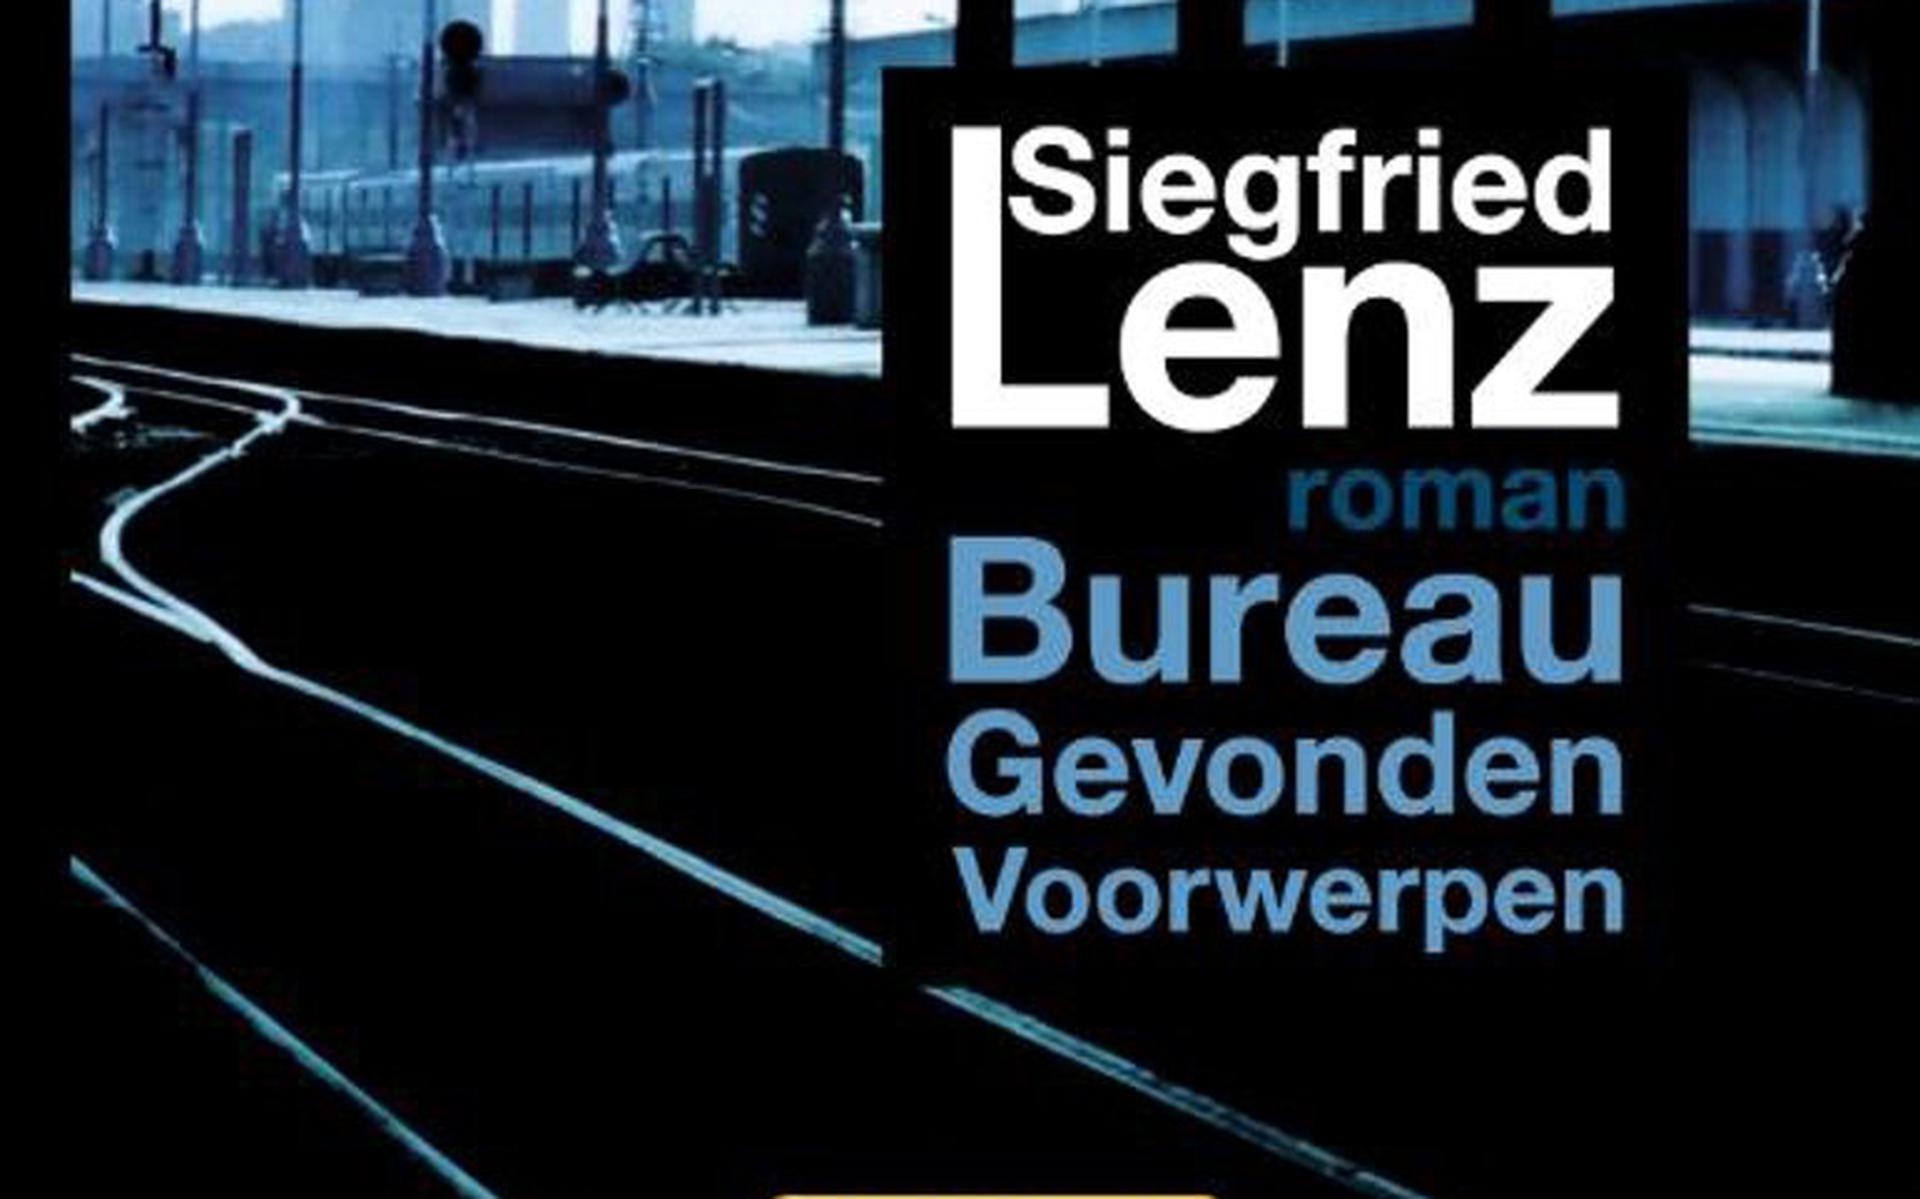 Bureau Gevonden Voorwerpen (2003), Siegfried Lenz.